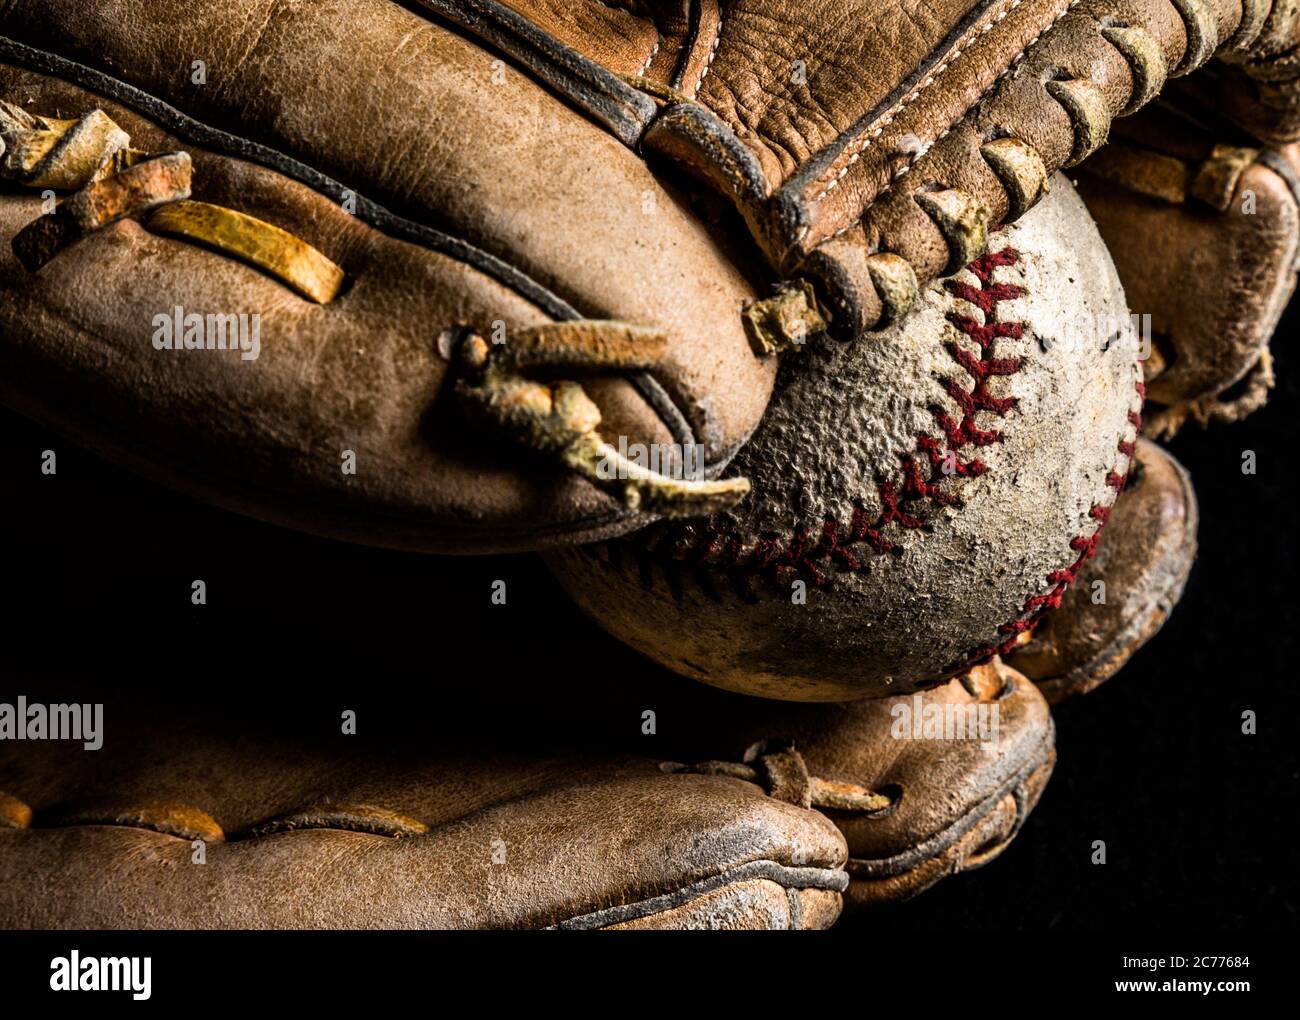 Baseball mitt holding a scuffed up old baseball. Stock Photo